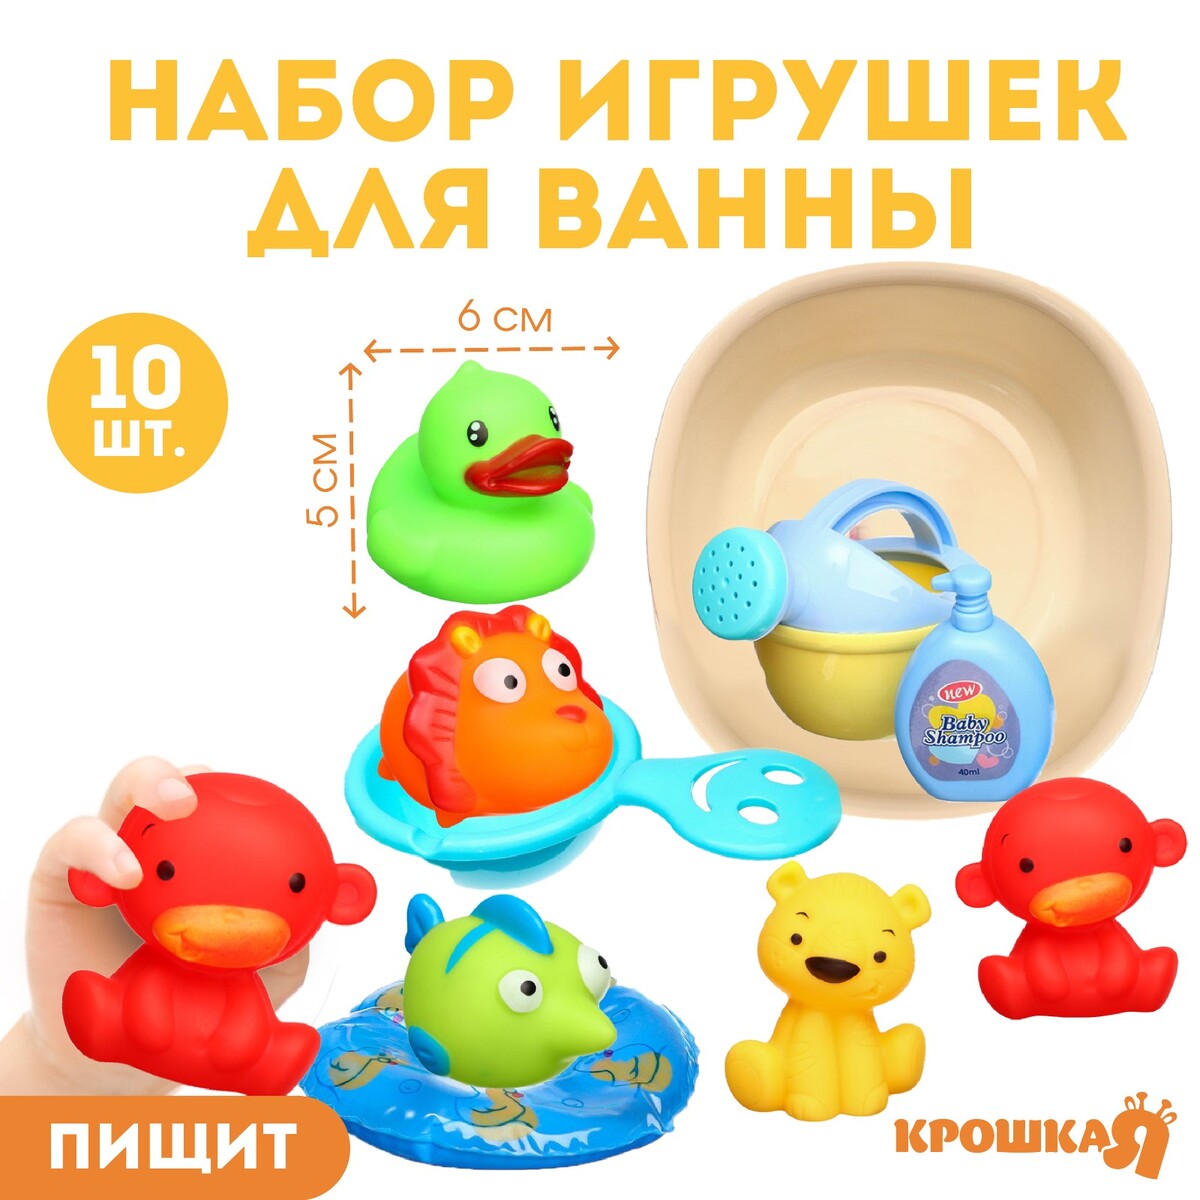 Набор резиновых игрушек для ванны набор резиновых игрушек репка